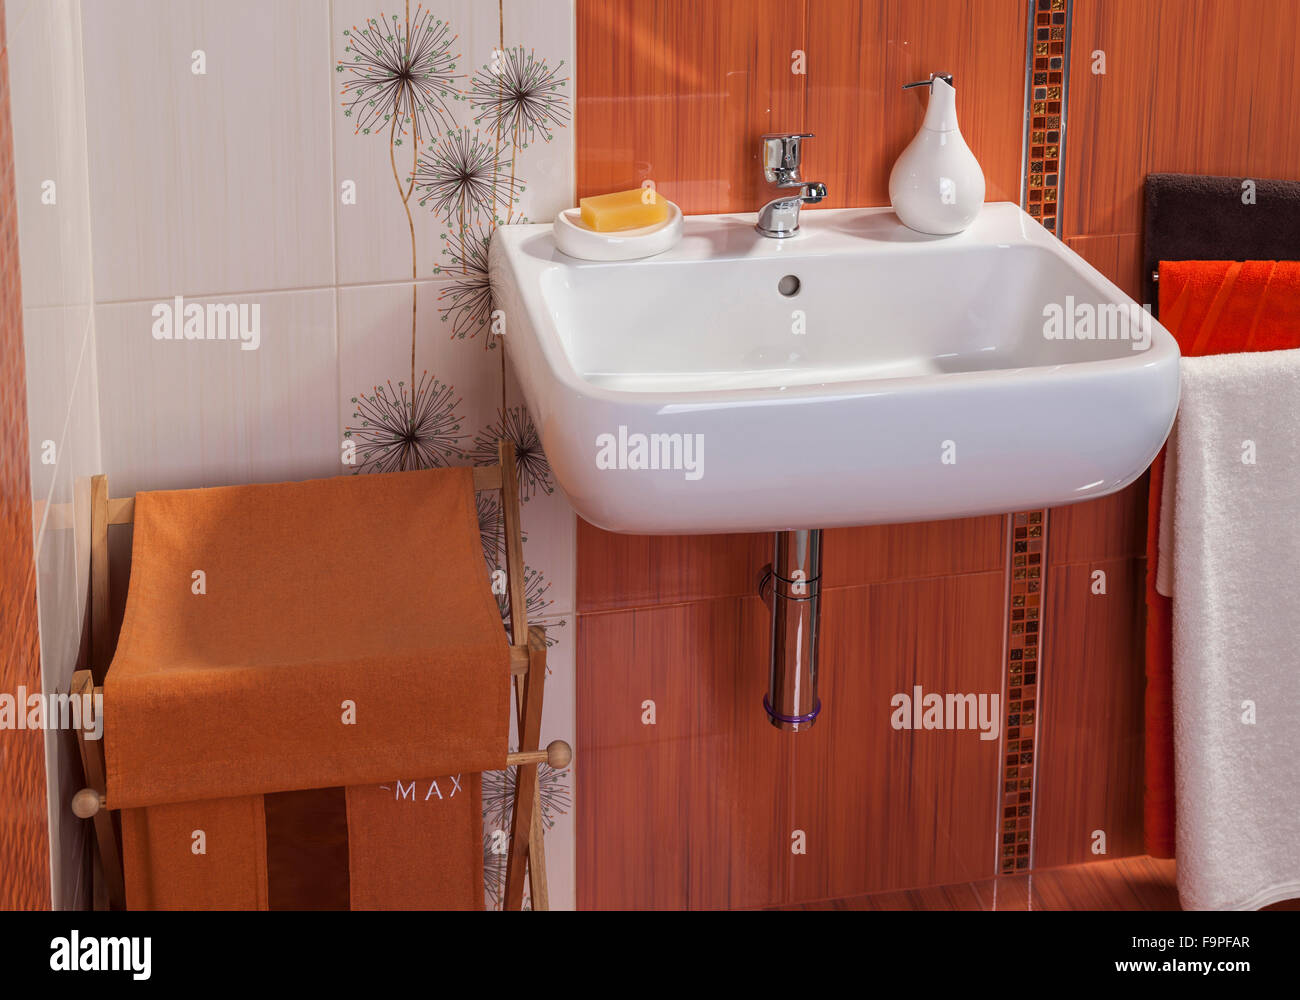 Détail d'une salle de bains privative moderne intérieur en orange avec lavabo Banque D'Images